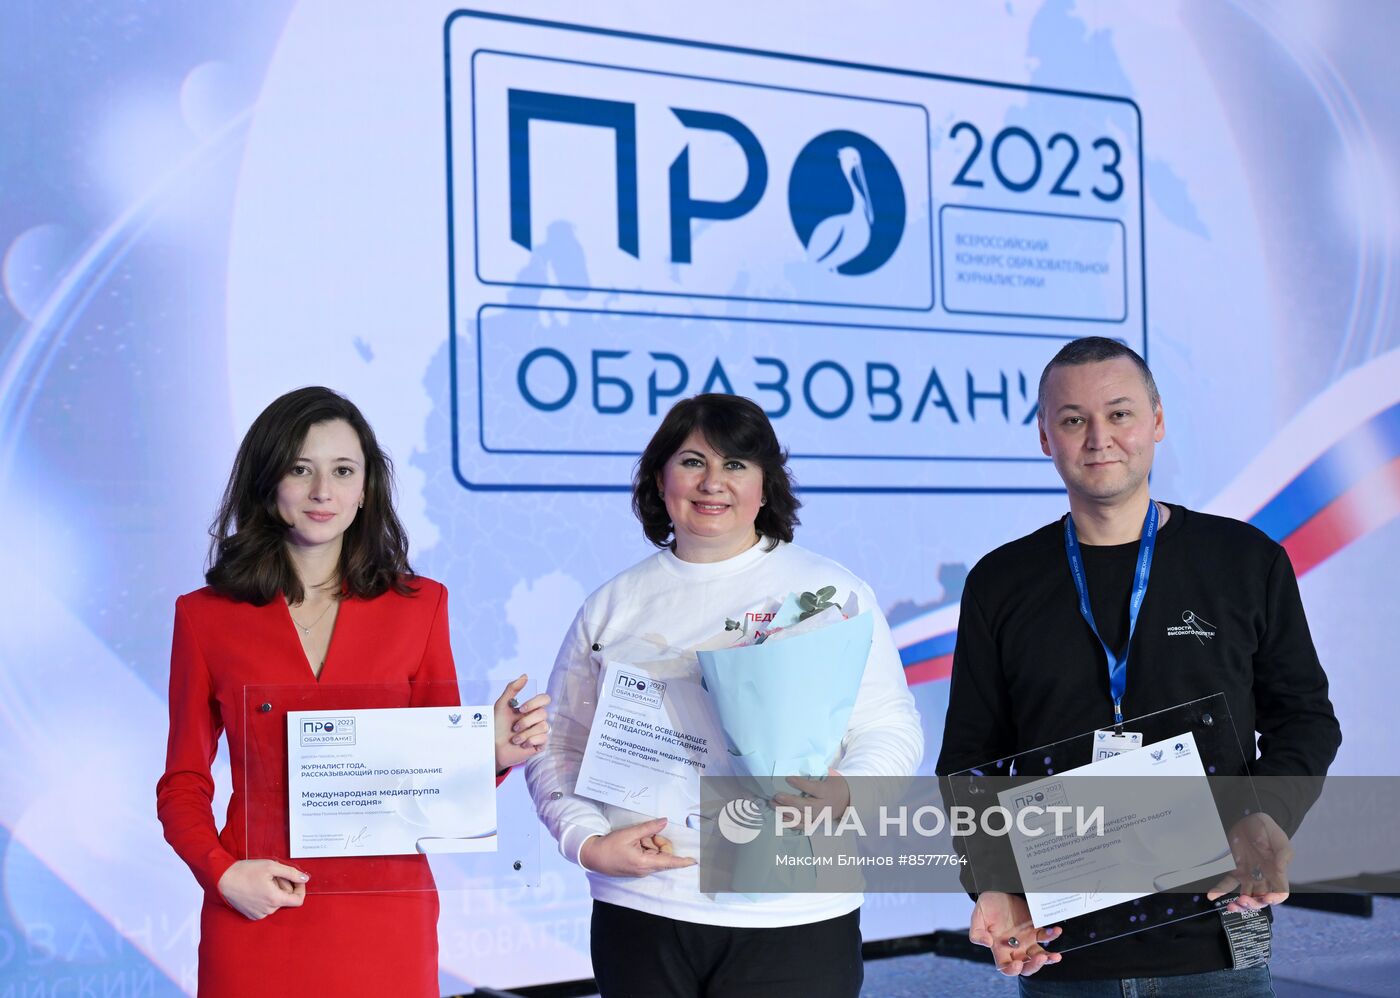  Церемония награждения победителей Всероссийского конкурса журналистских работ в области образования "ПРО Образование  2023"